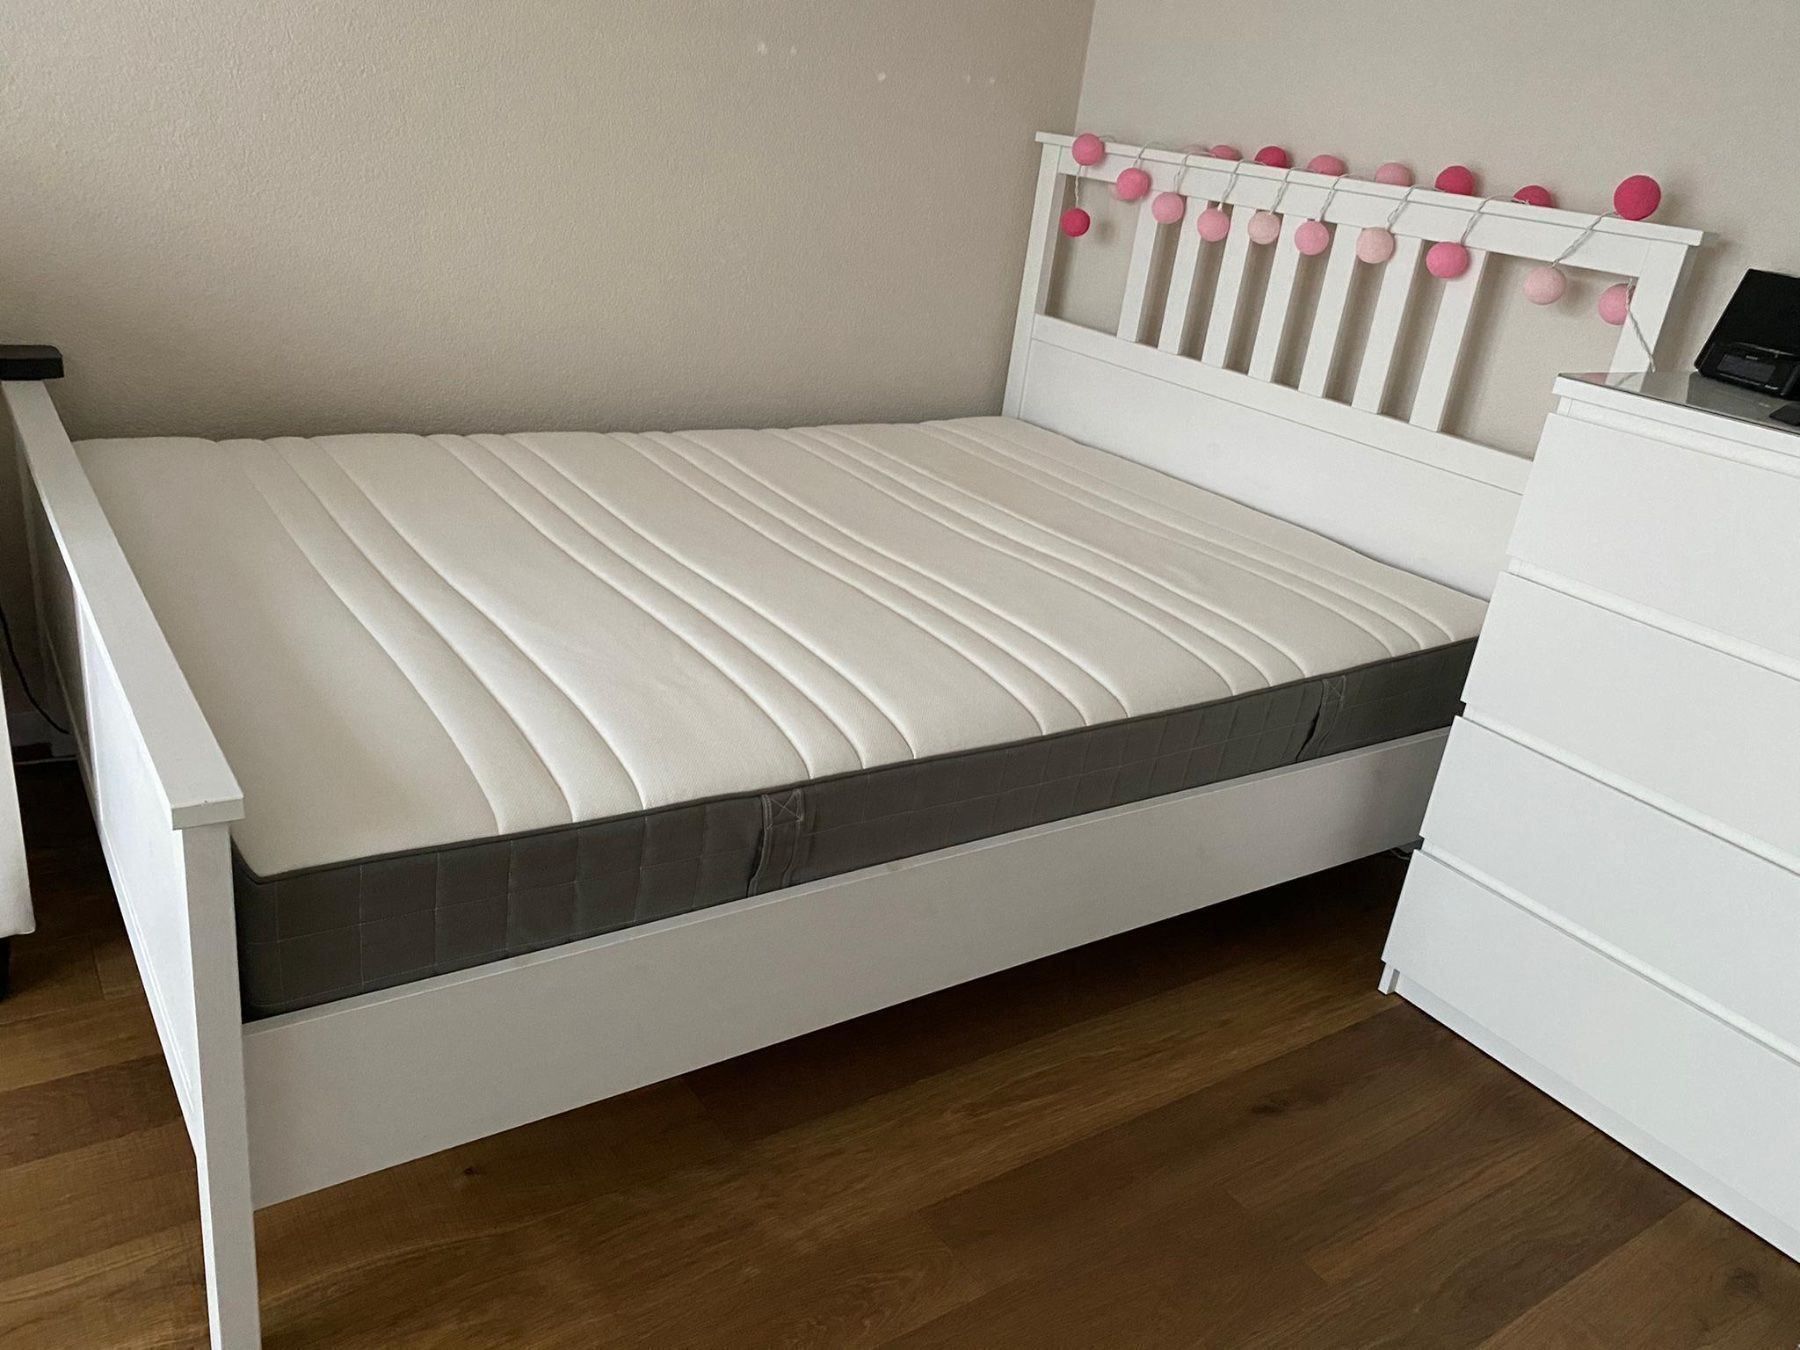 IKEA Bett Lattenrost amp Matratze 140x200 Kaufen auf Ricardo